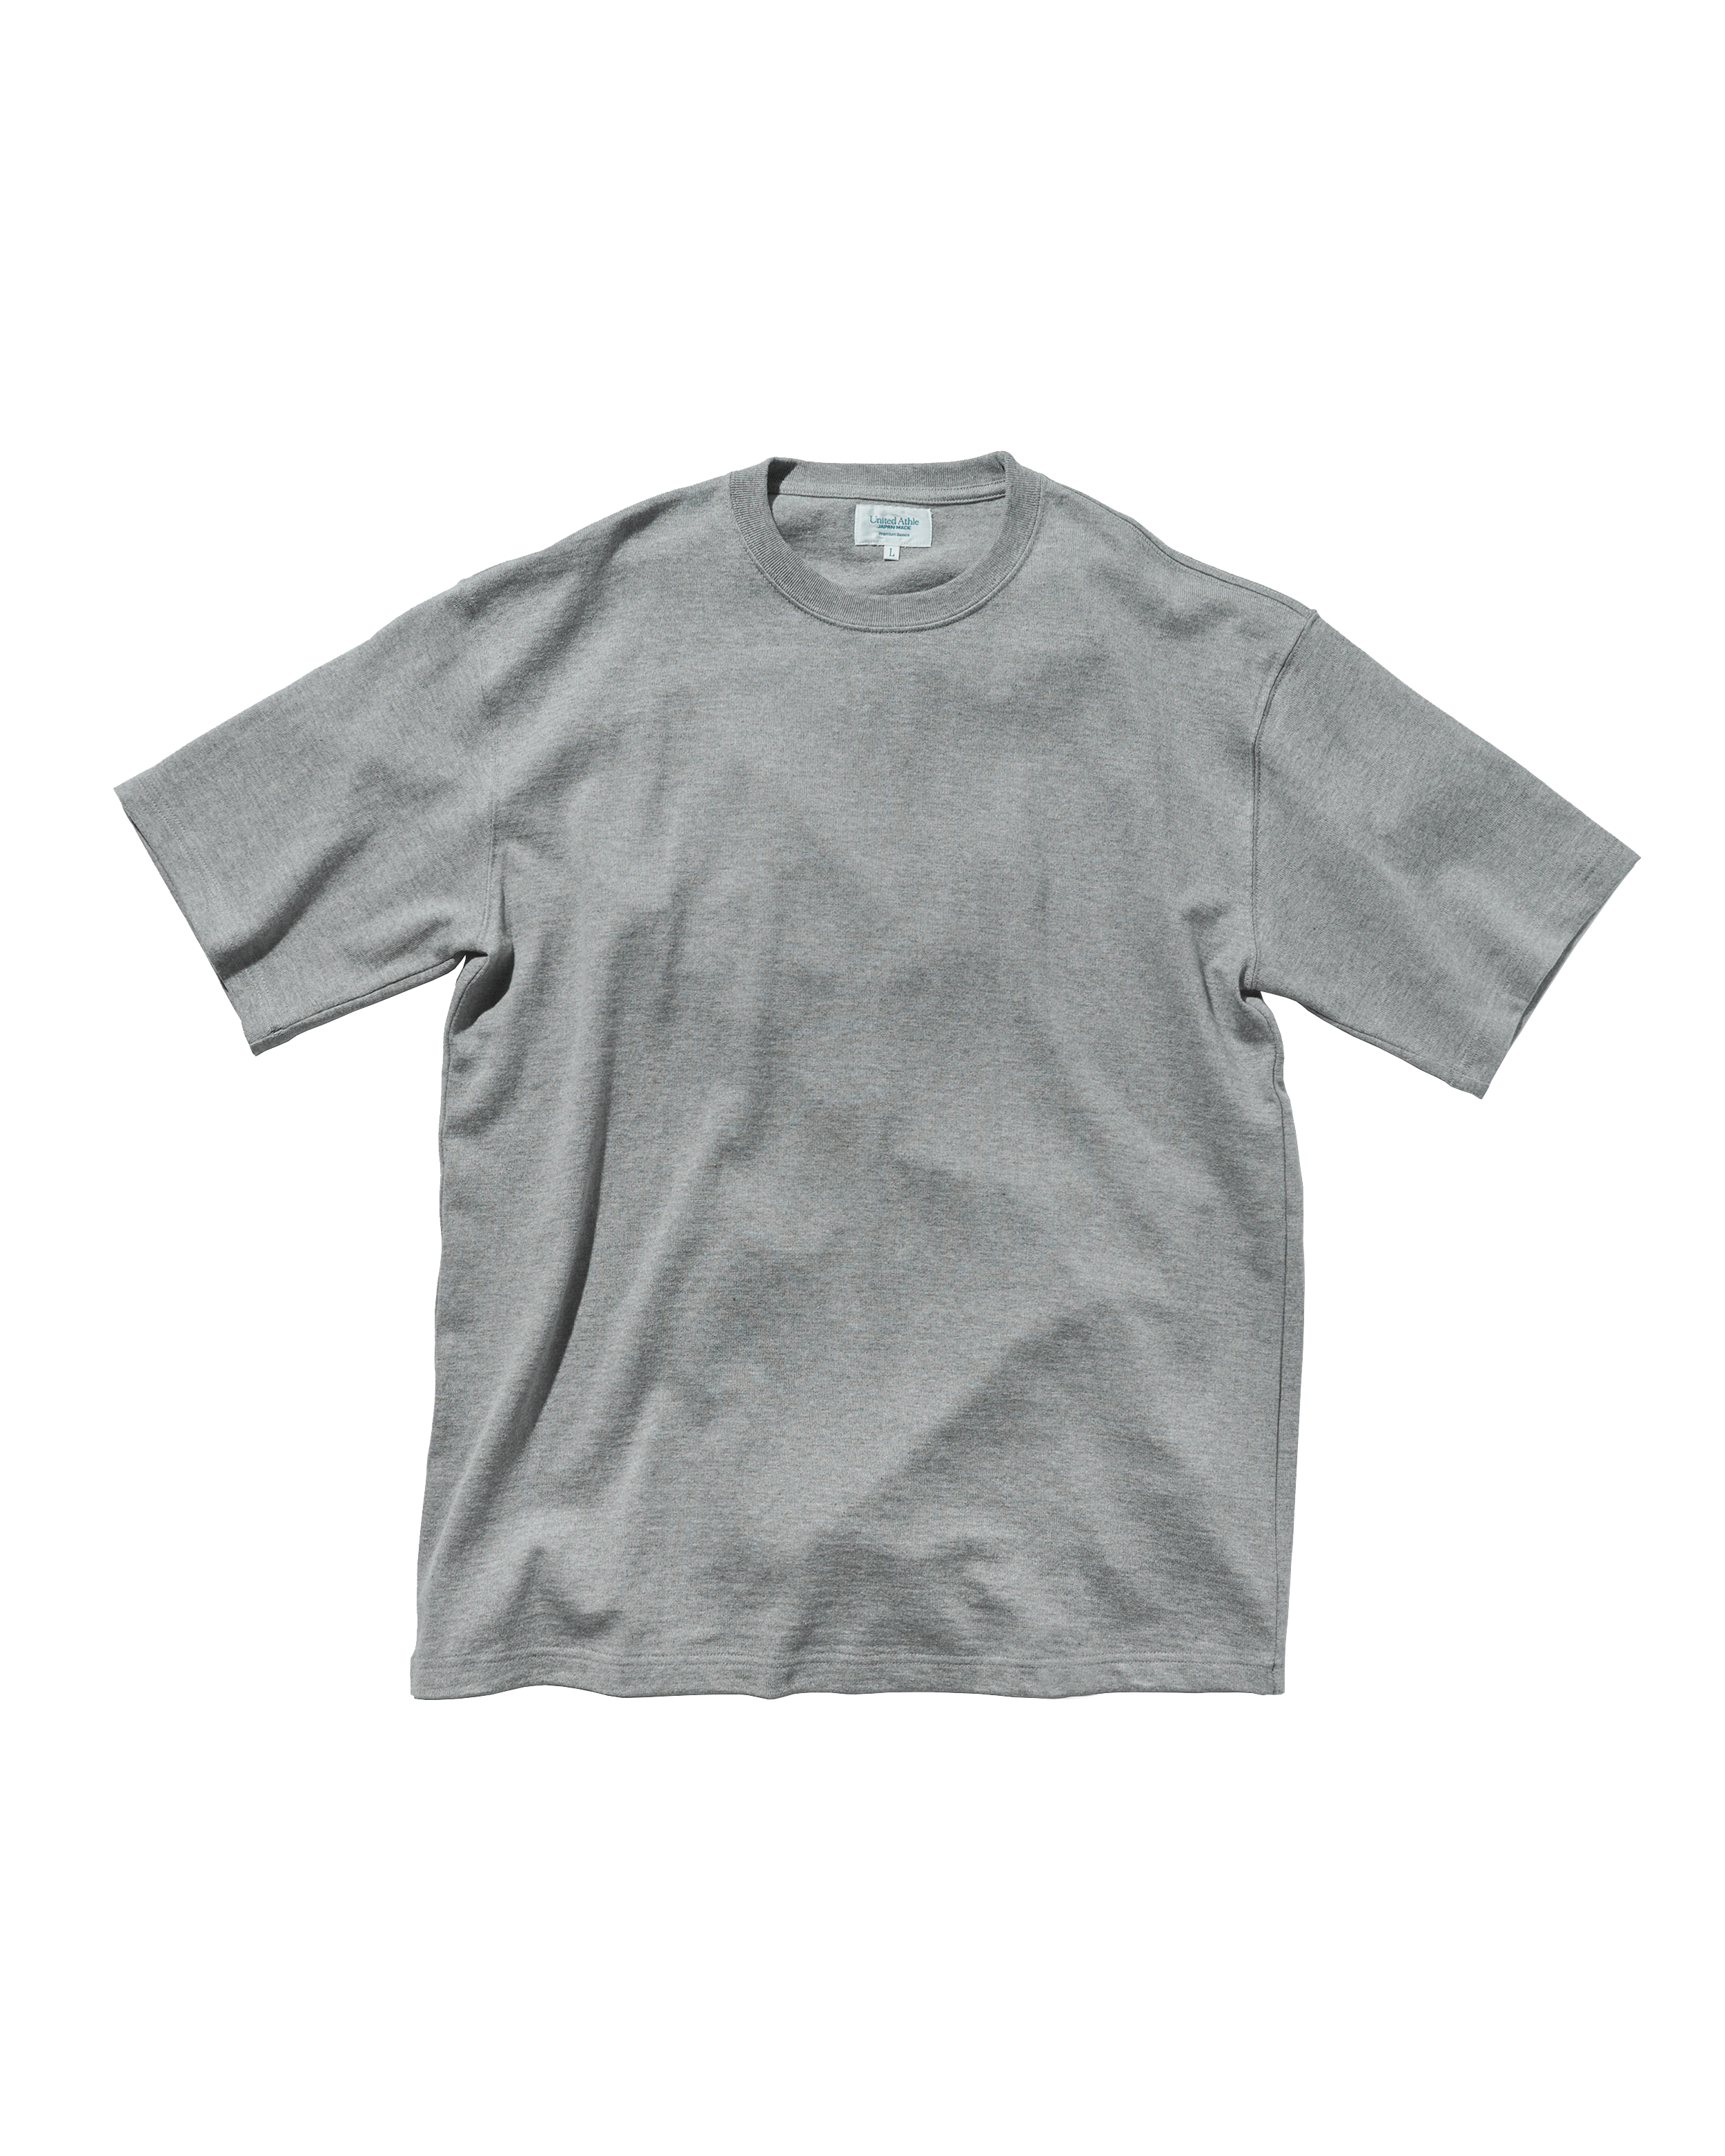 80001 - Japan Made - Standard Fit Short Sleeve T-shirt  - Grey x 1